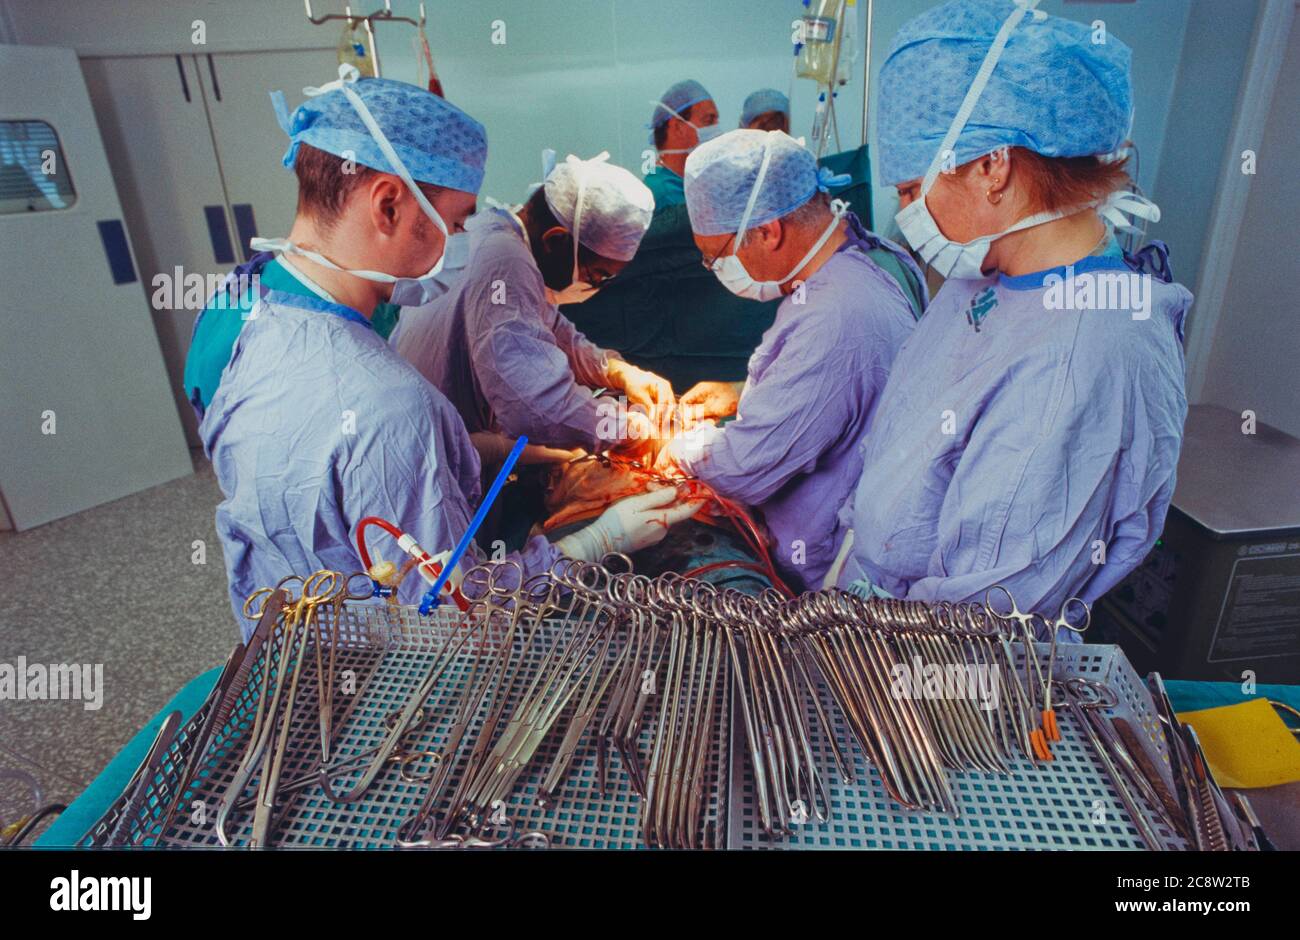 Plateau d'instruments chirurgicaux dans la zone stérile d'un bloc opératoire Banque D'Images